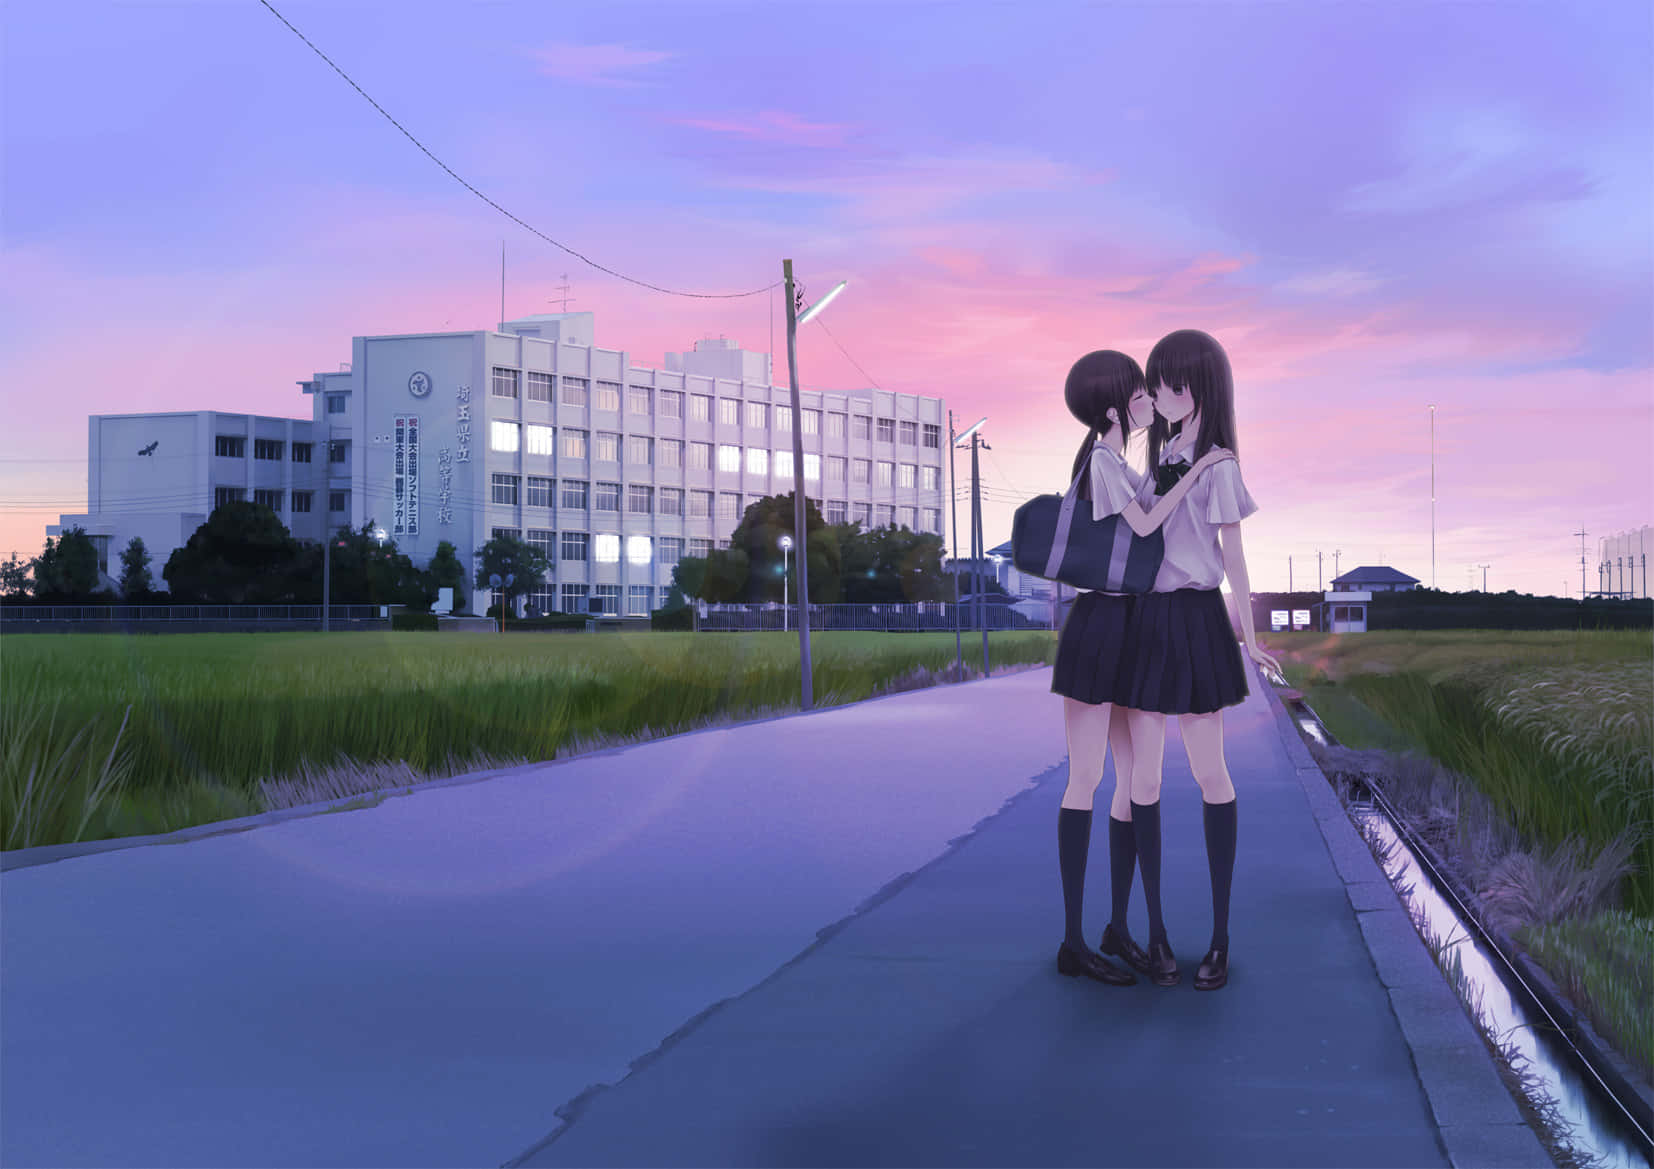 Dueragazze Anime In Piedi Su Una Strada Al Tramonto